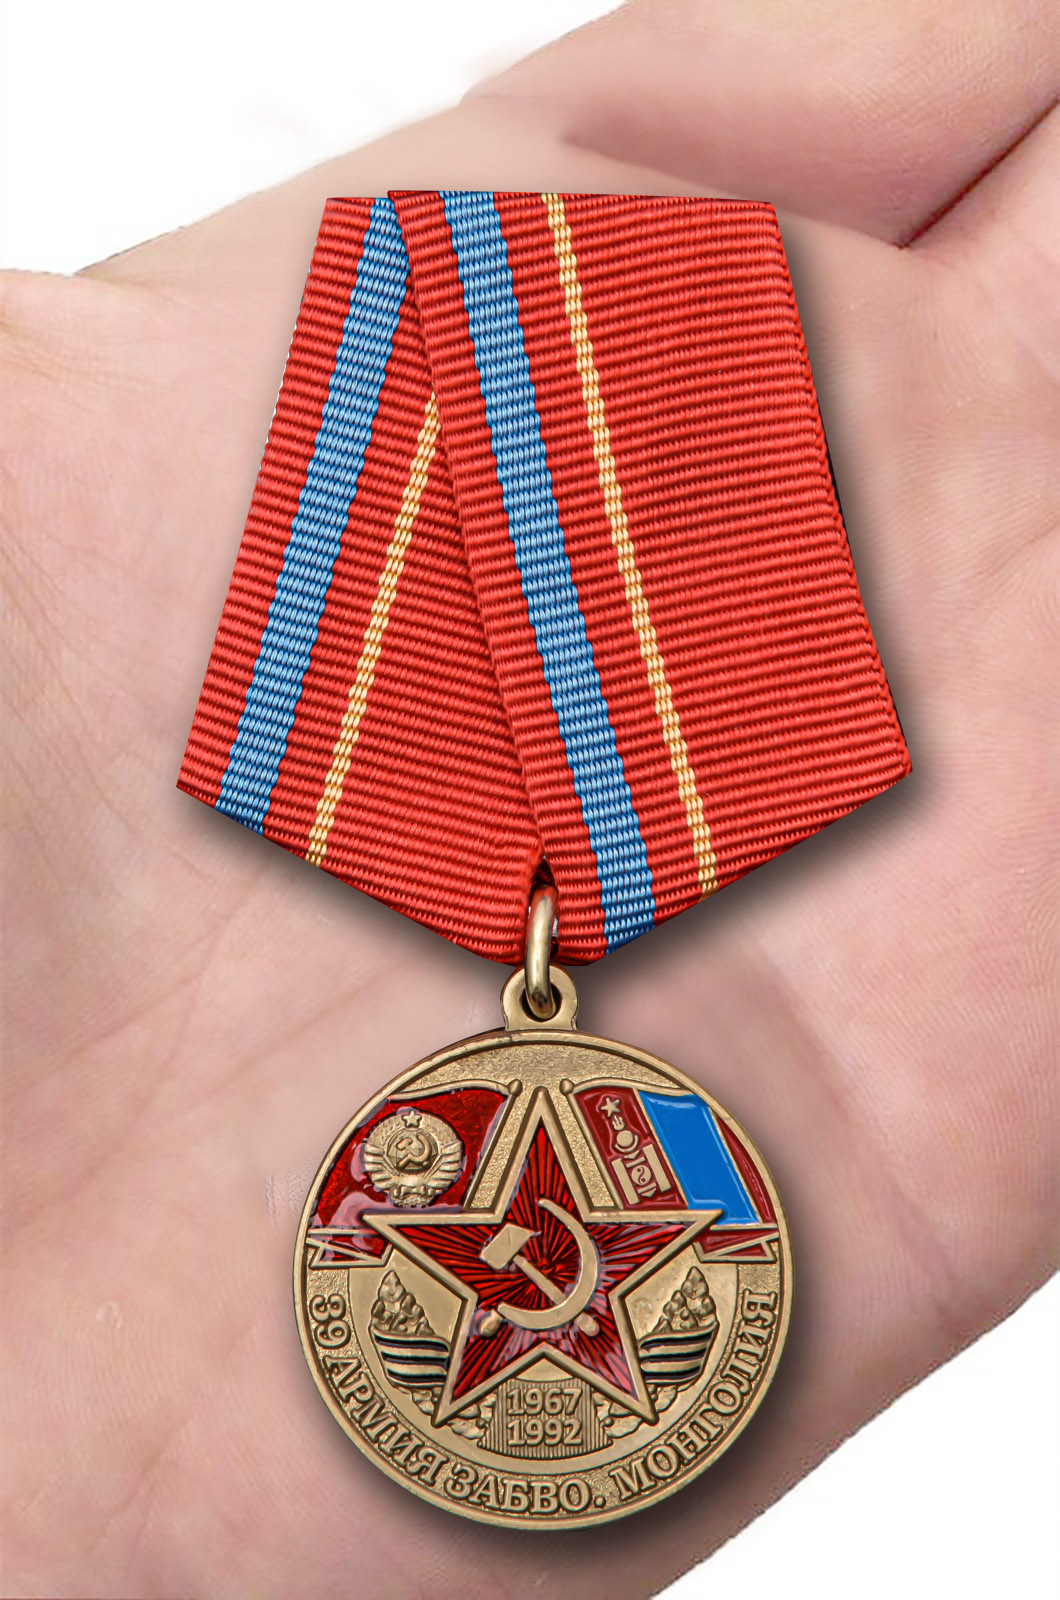 Наградная медаль "39 Армия ЗАБВО. Монголия" 